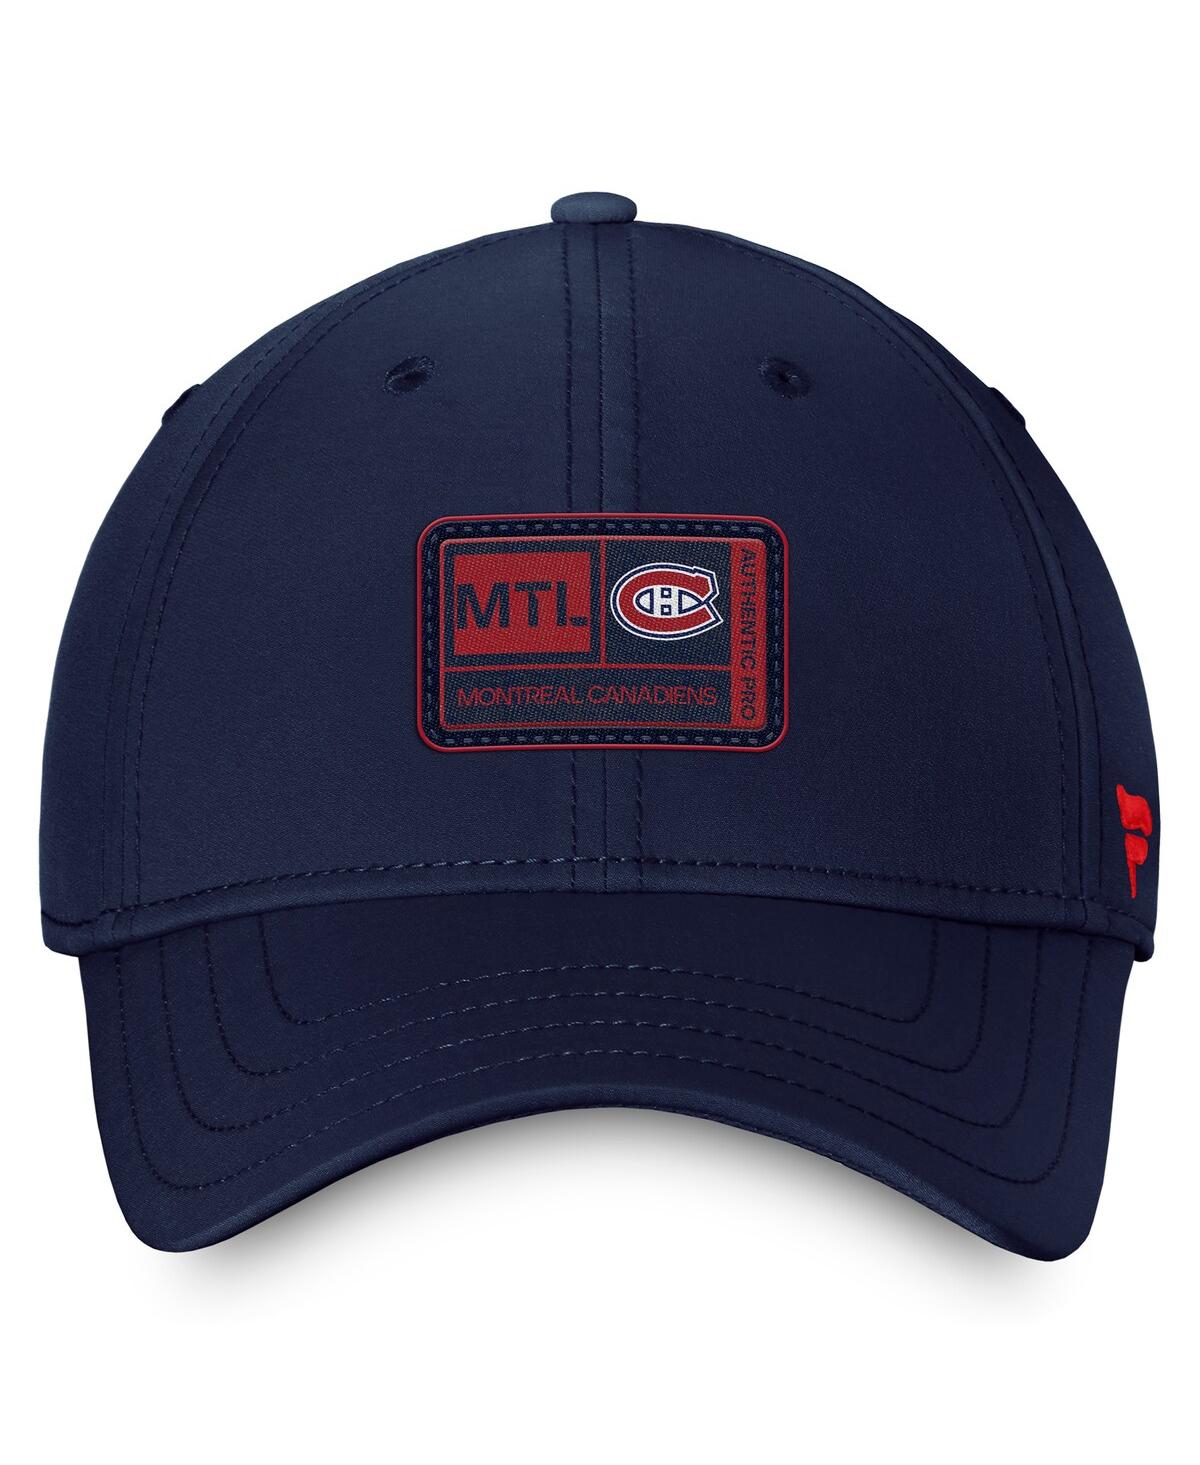 Shop Fanatics Men's  Navy Montreal Canadiens Authentic Pro Training Camp Flex Hat